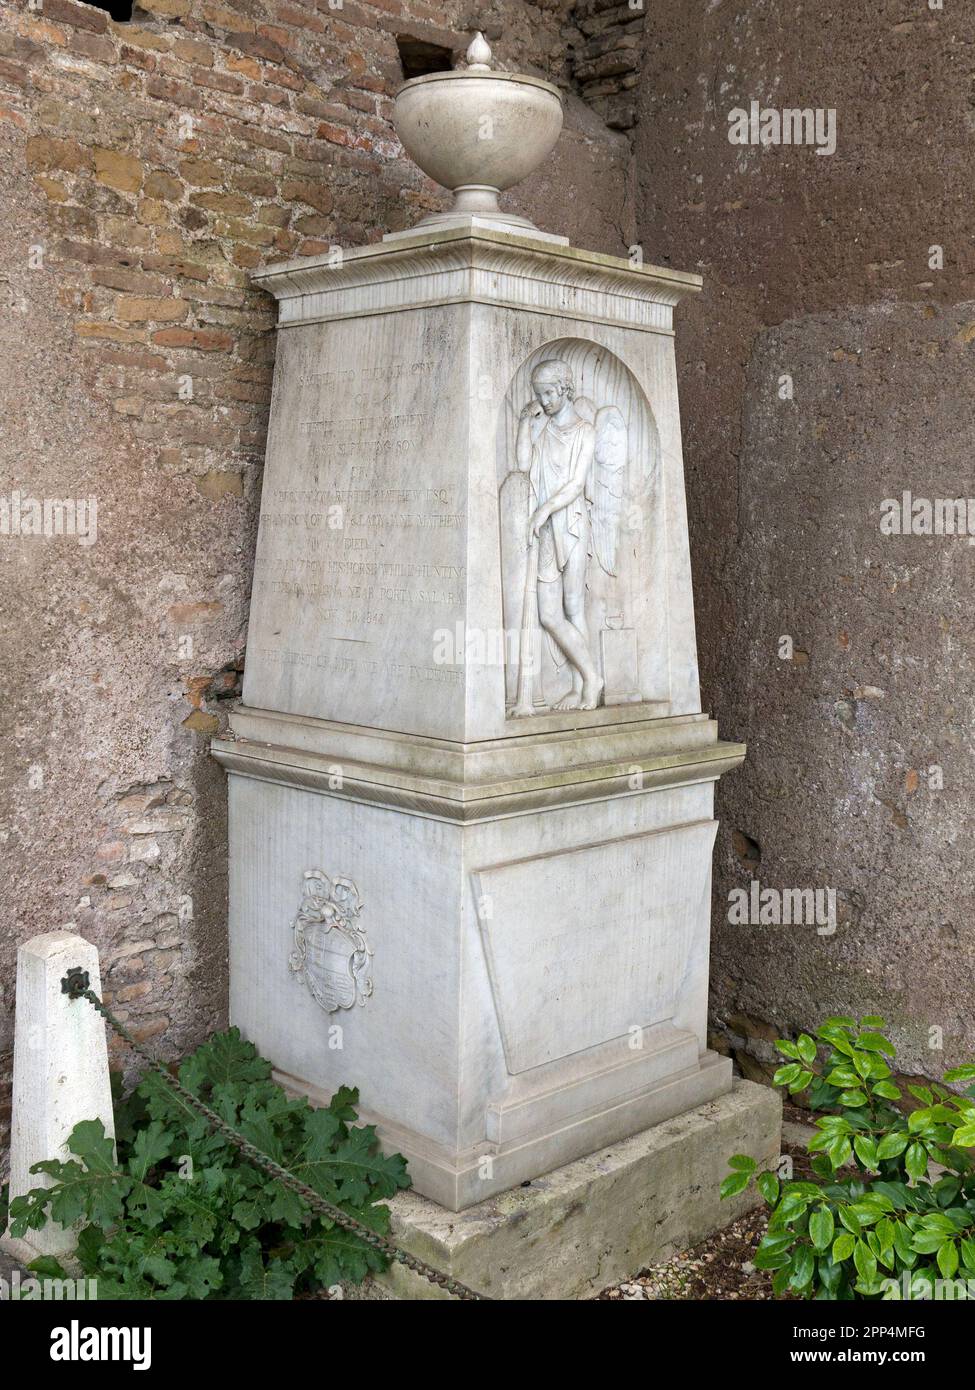 Tombeau de Bertie Bertie Mathew (1811 - 1844), mort par une chute de son cheval pendant la chasse, cimetière non-catholique dans le quartier de Testaccio, Rome, Italie Banque D'Images